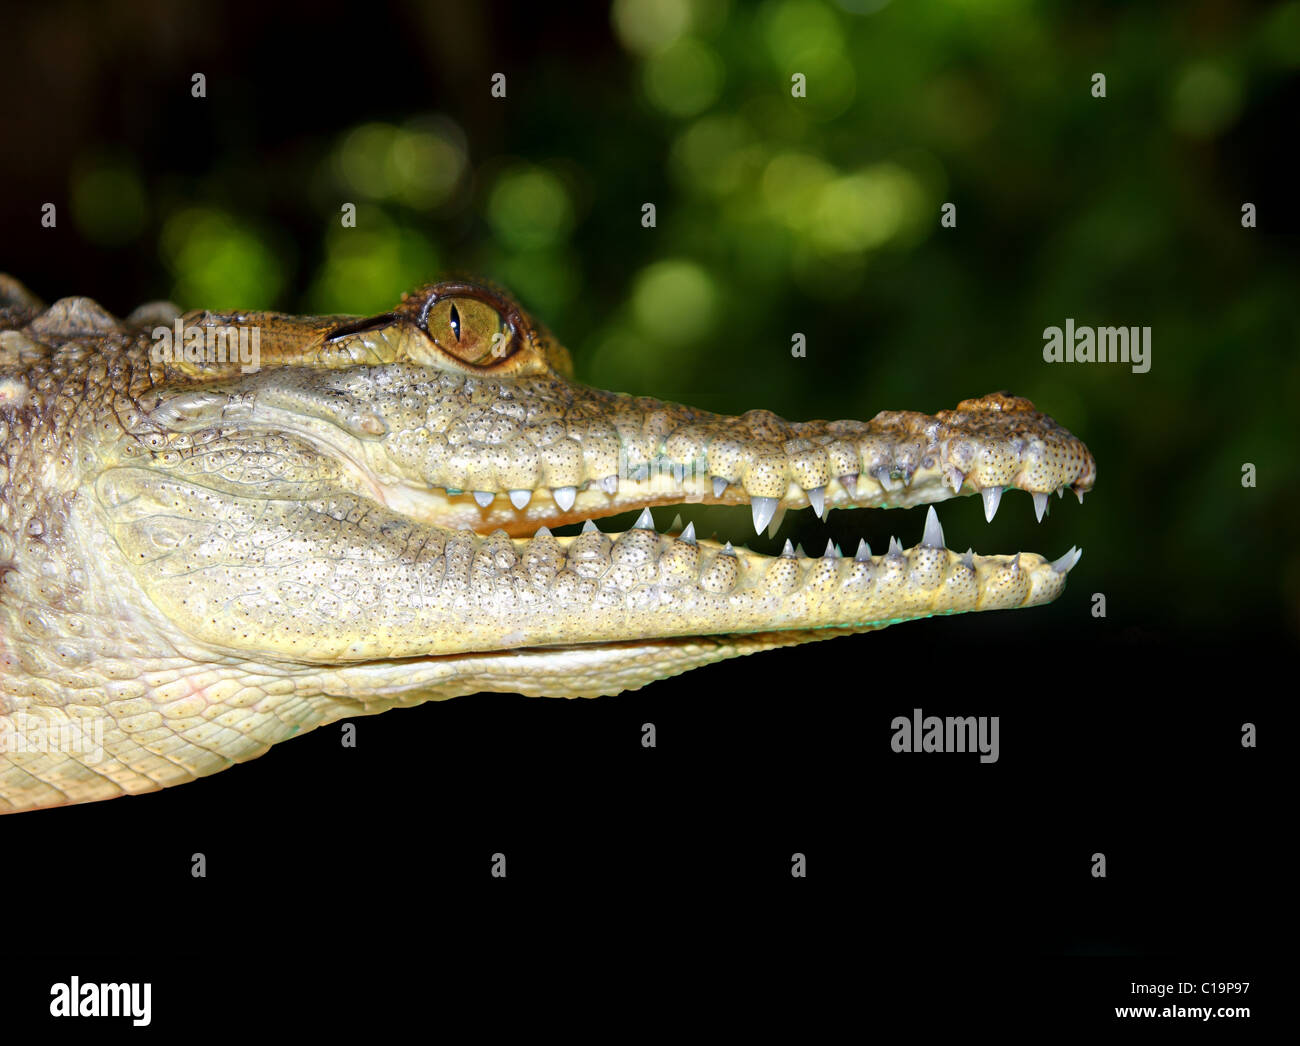 Profil de crocodile détail macro tête portrait en fond sombre Banque D'Images